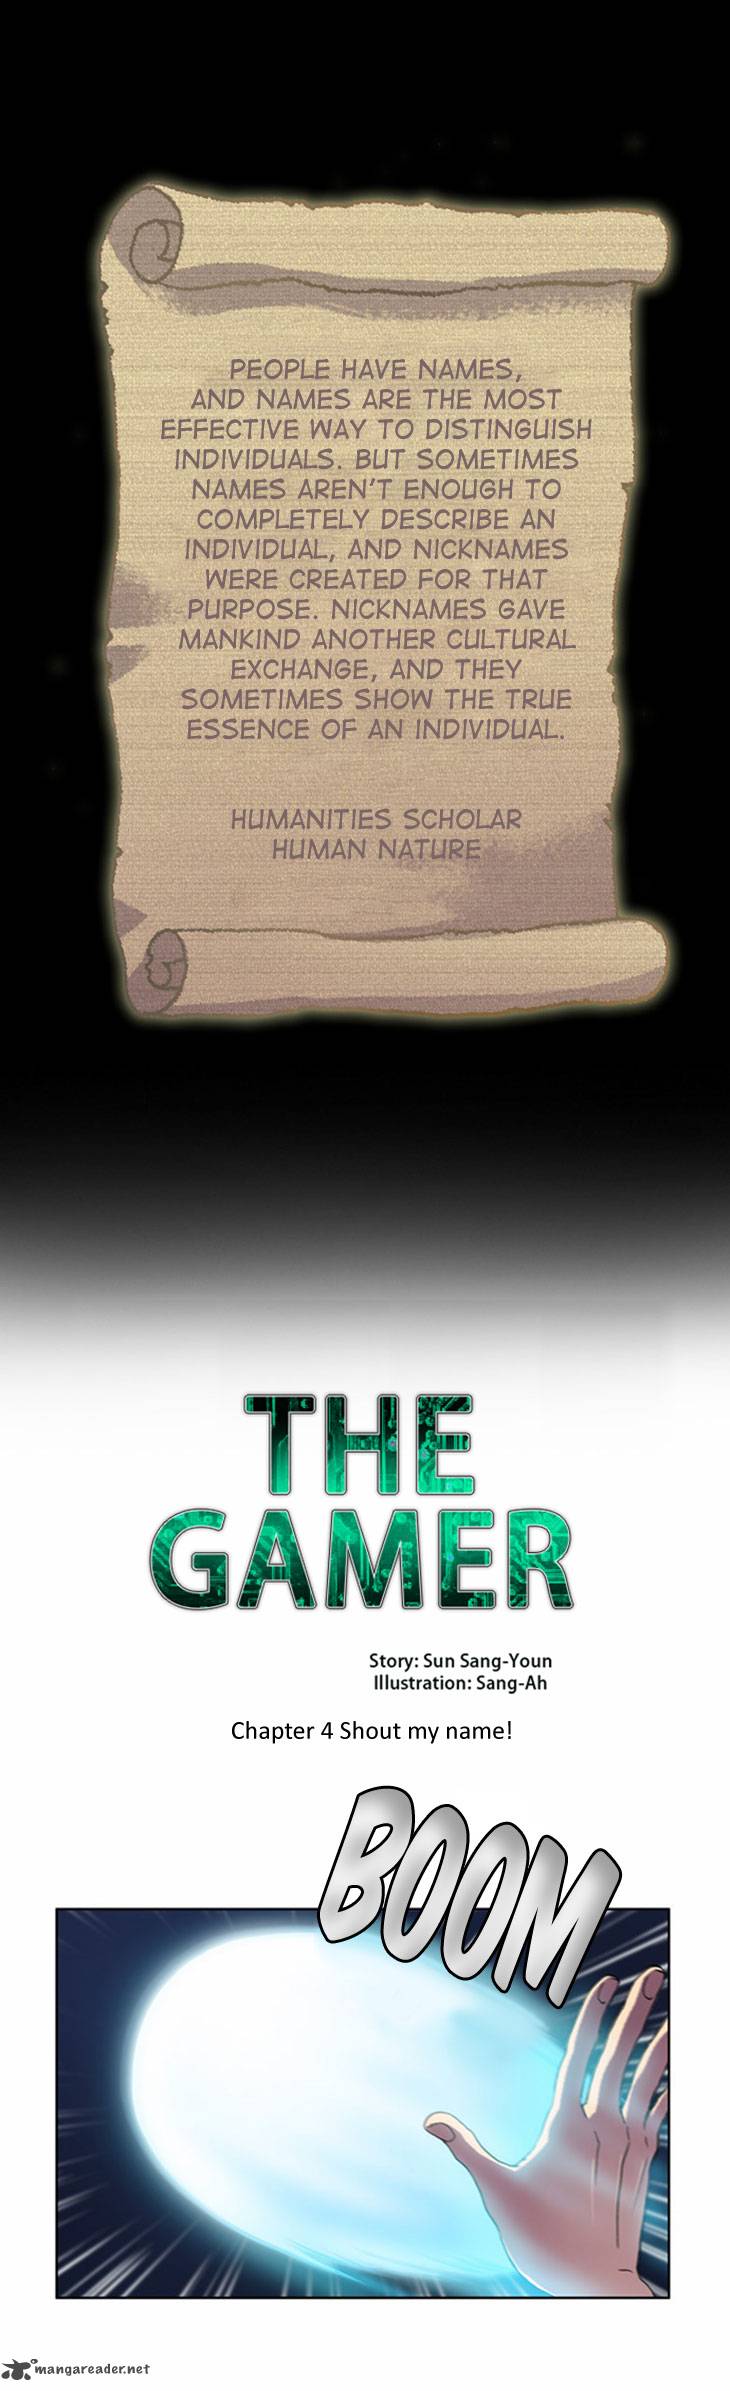 The Gamer 12 1